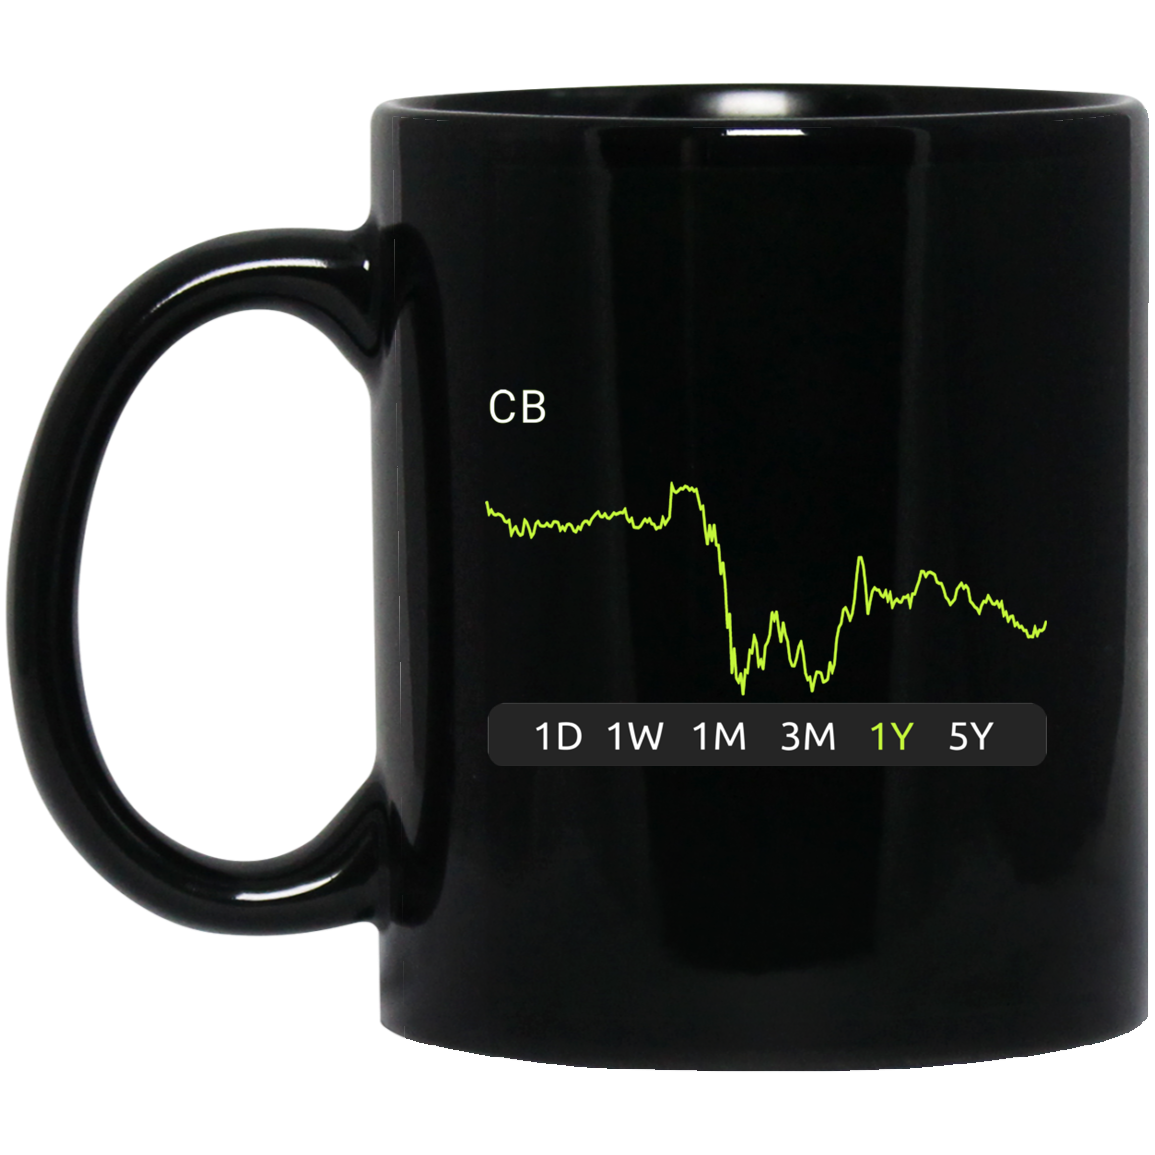 CB Stock 1m Mug